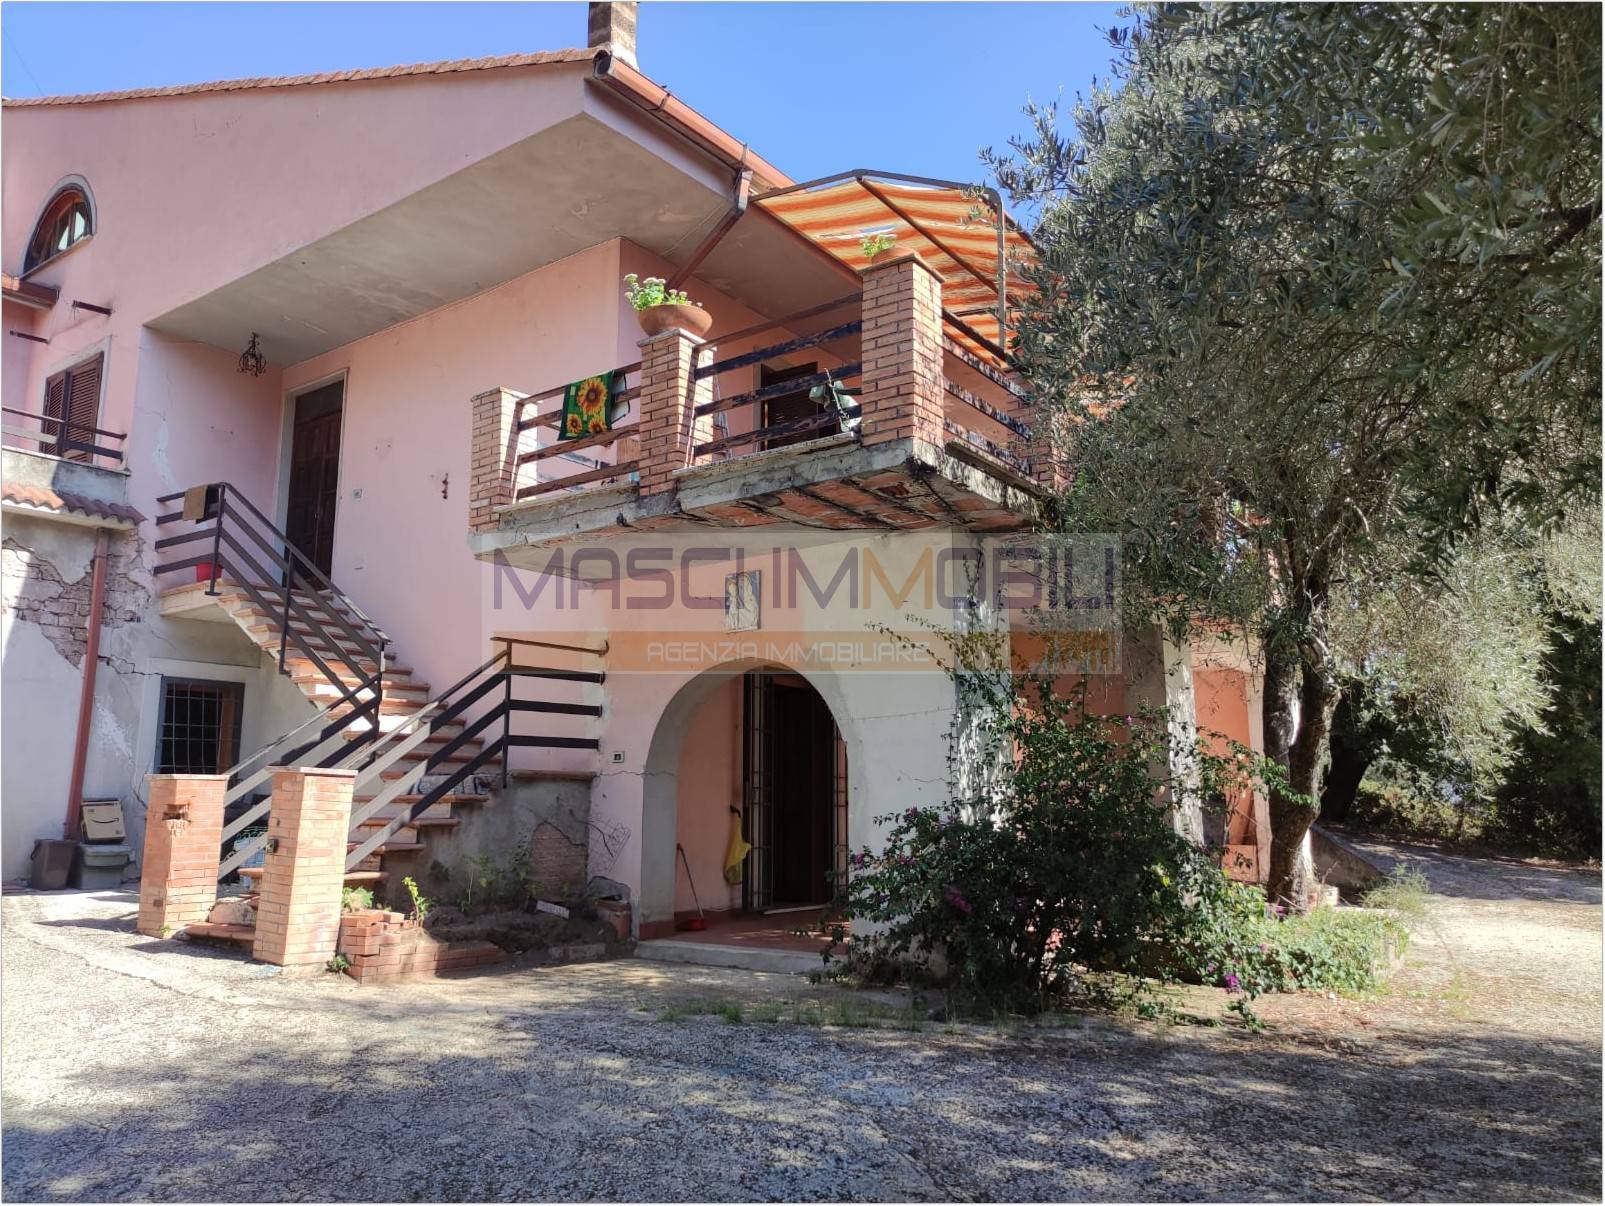 Appartamento in vendita a Fiano Romano, 4 locali, prezzo € 95.000 | PortaleAgenzieImmobiliari.it